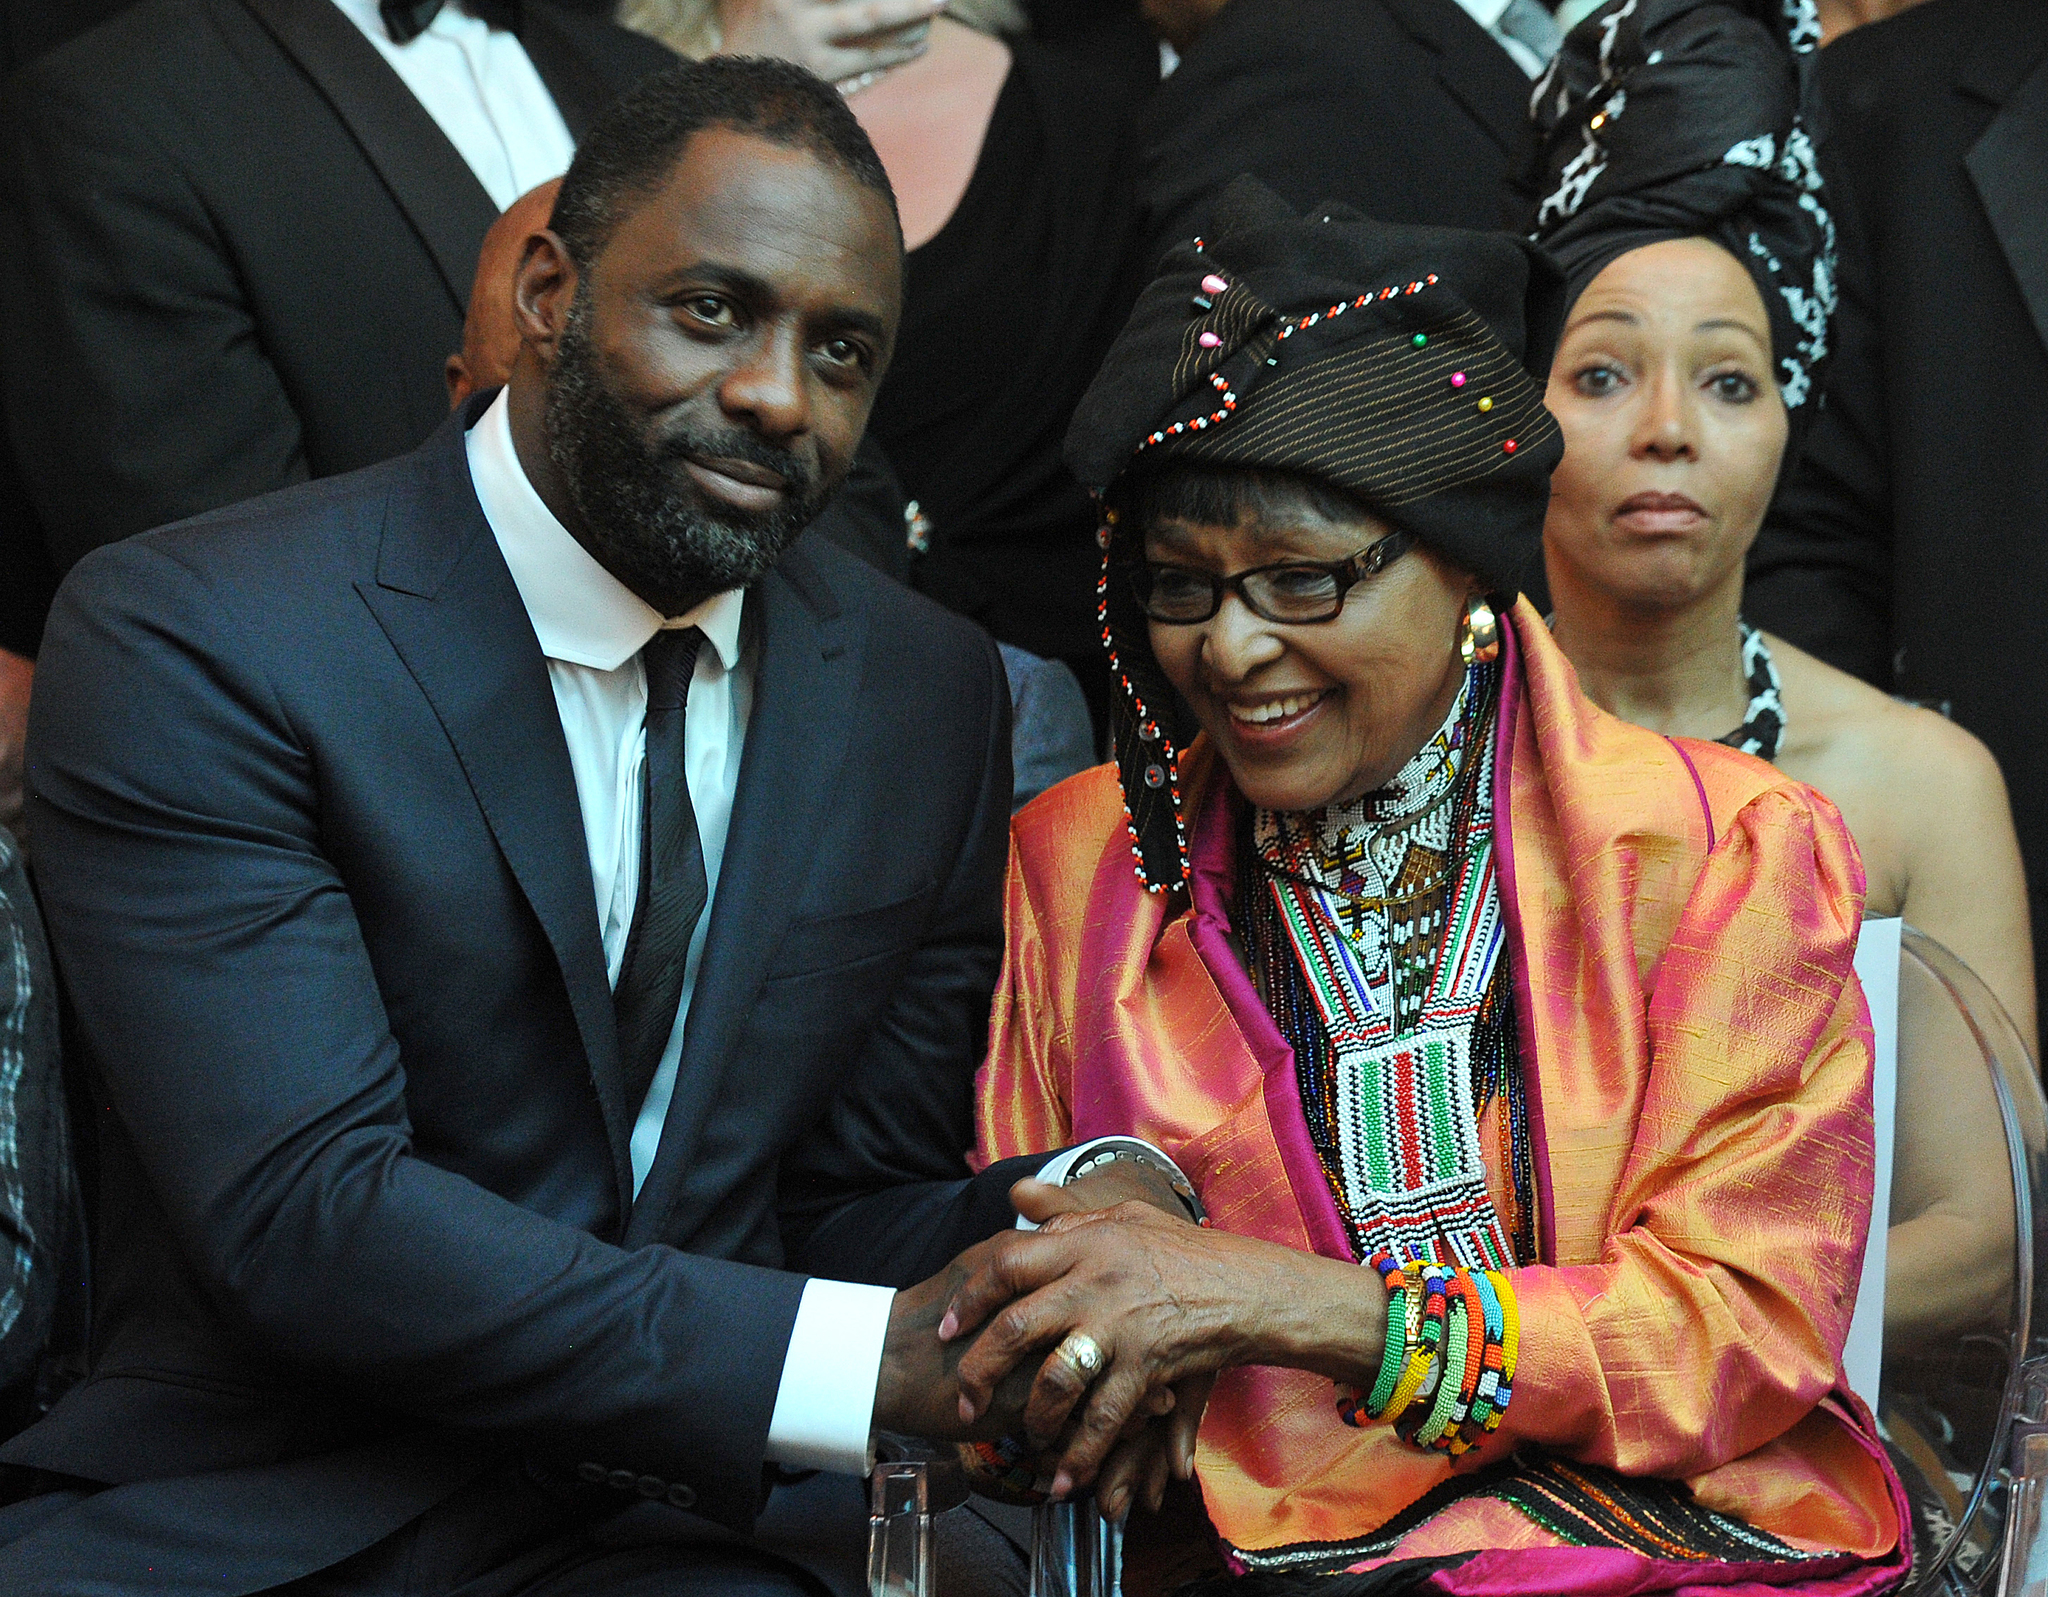 Idris Elba and Winnie Mandela at event of Mandela: ilgas kelias i laisve (2013)